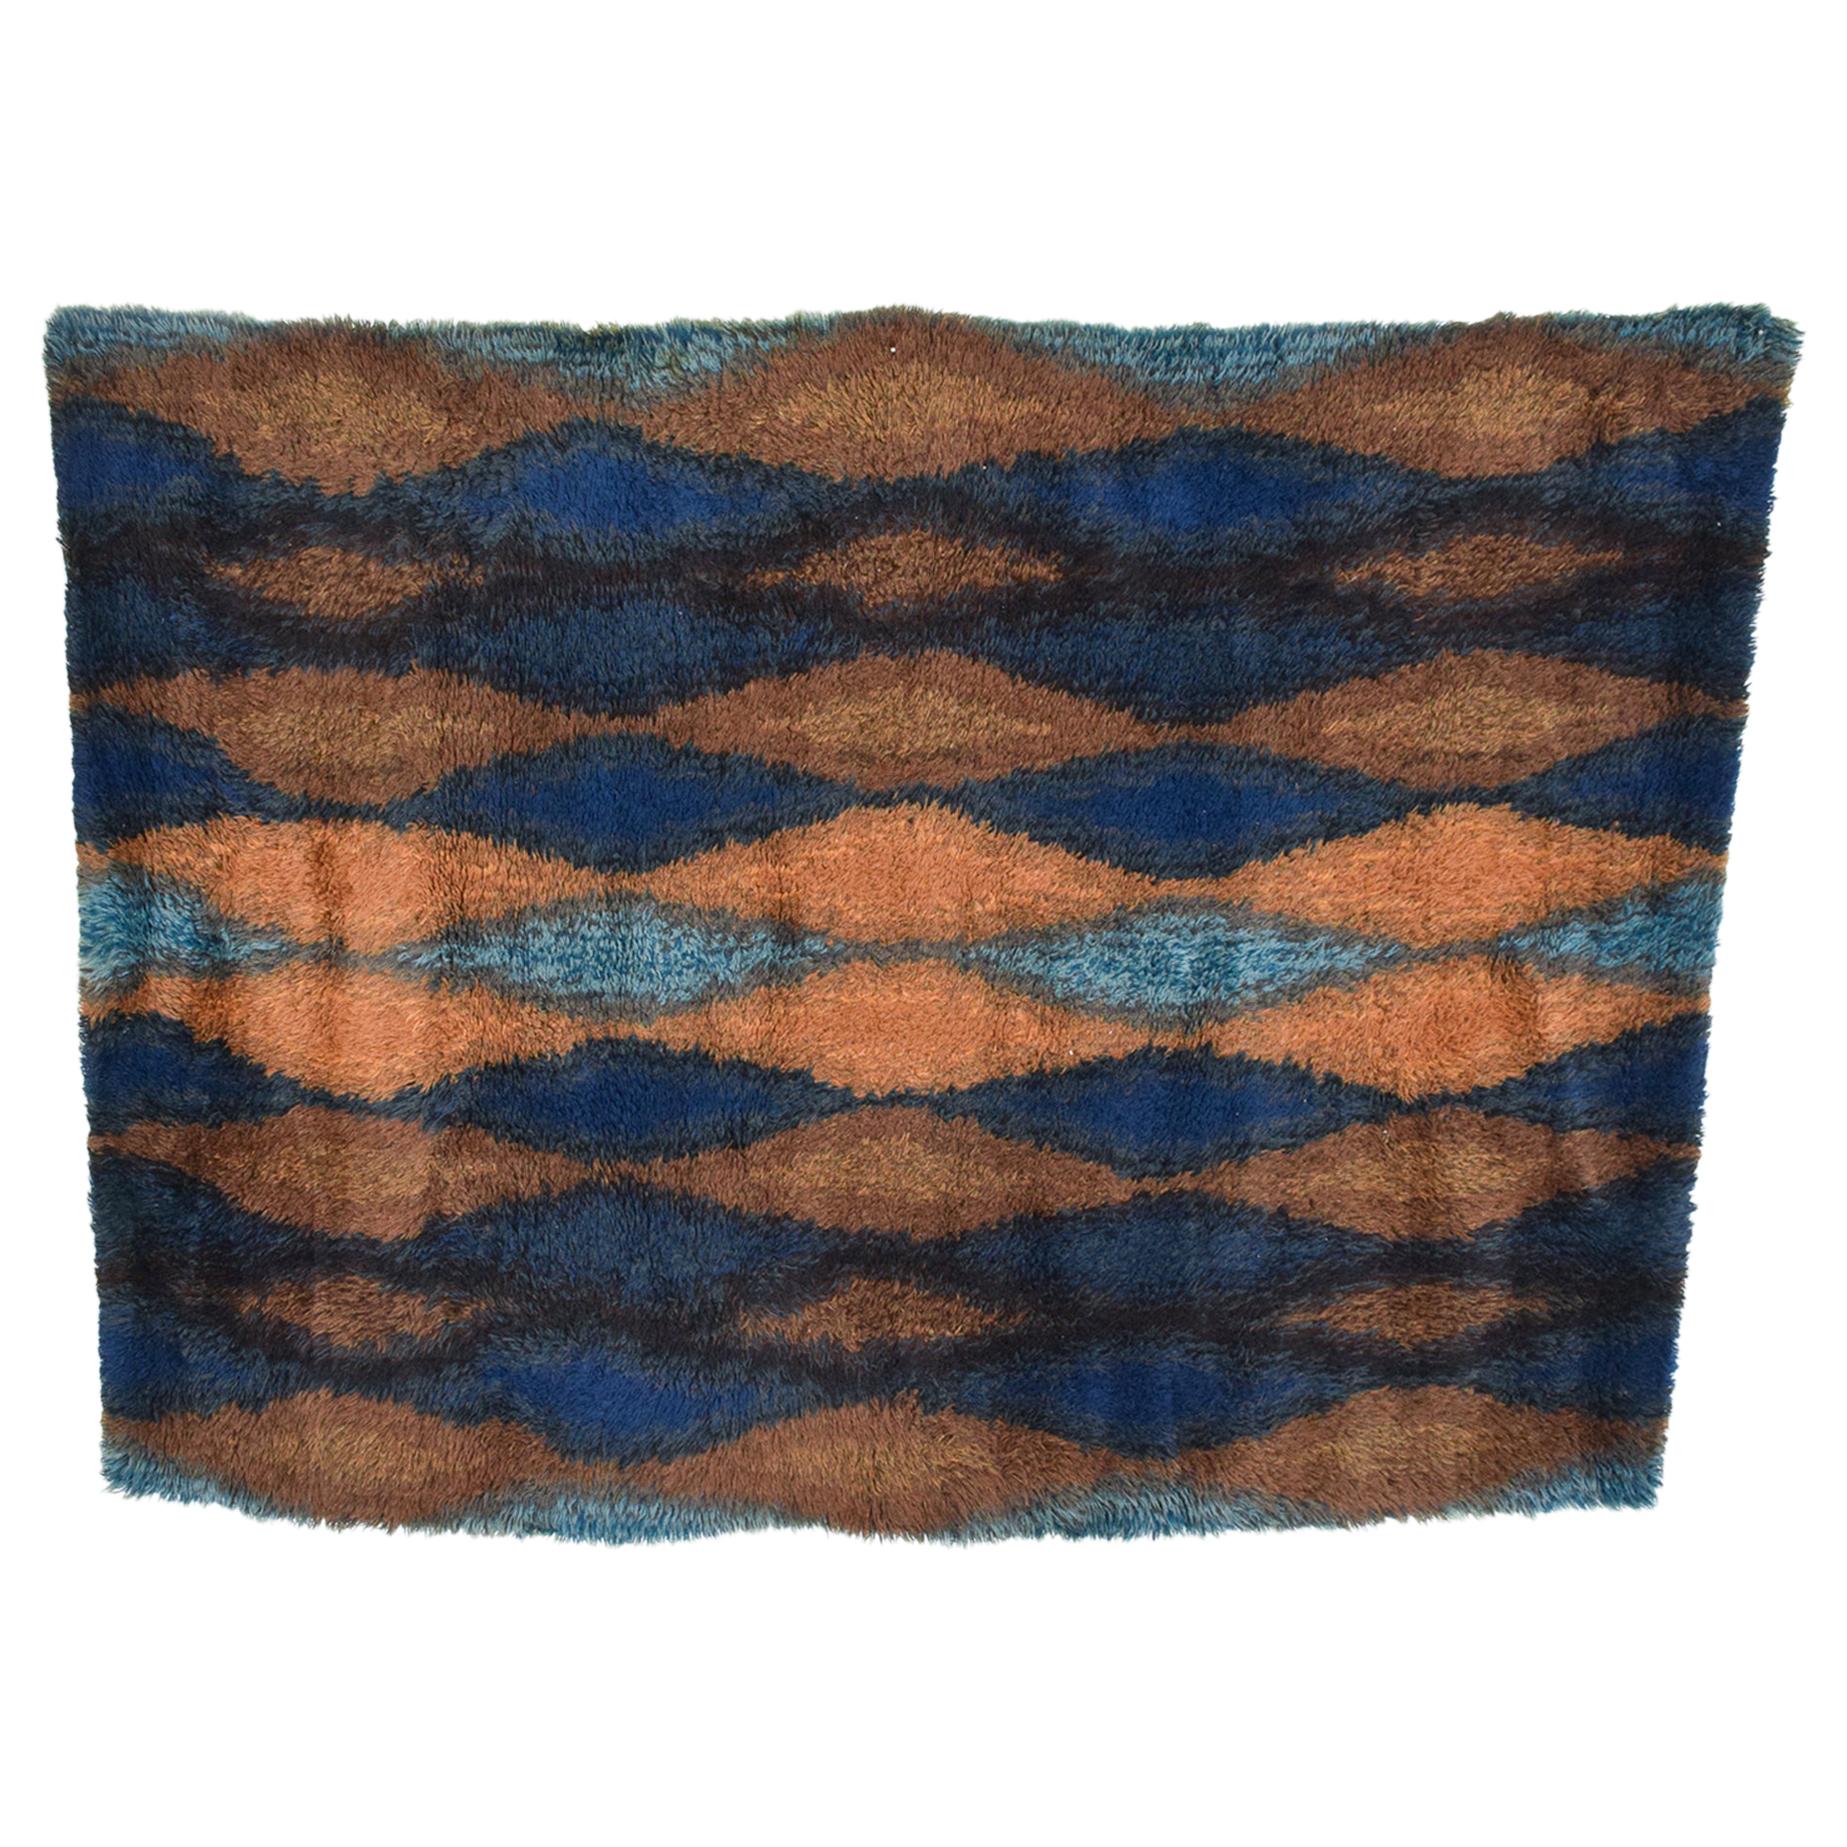  1960s Azure Blue Geometric Design Rug Tapestry Ege Rya Denmark